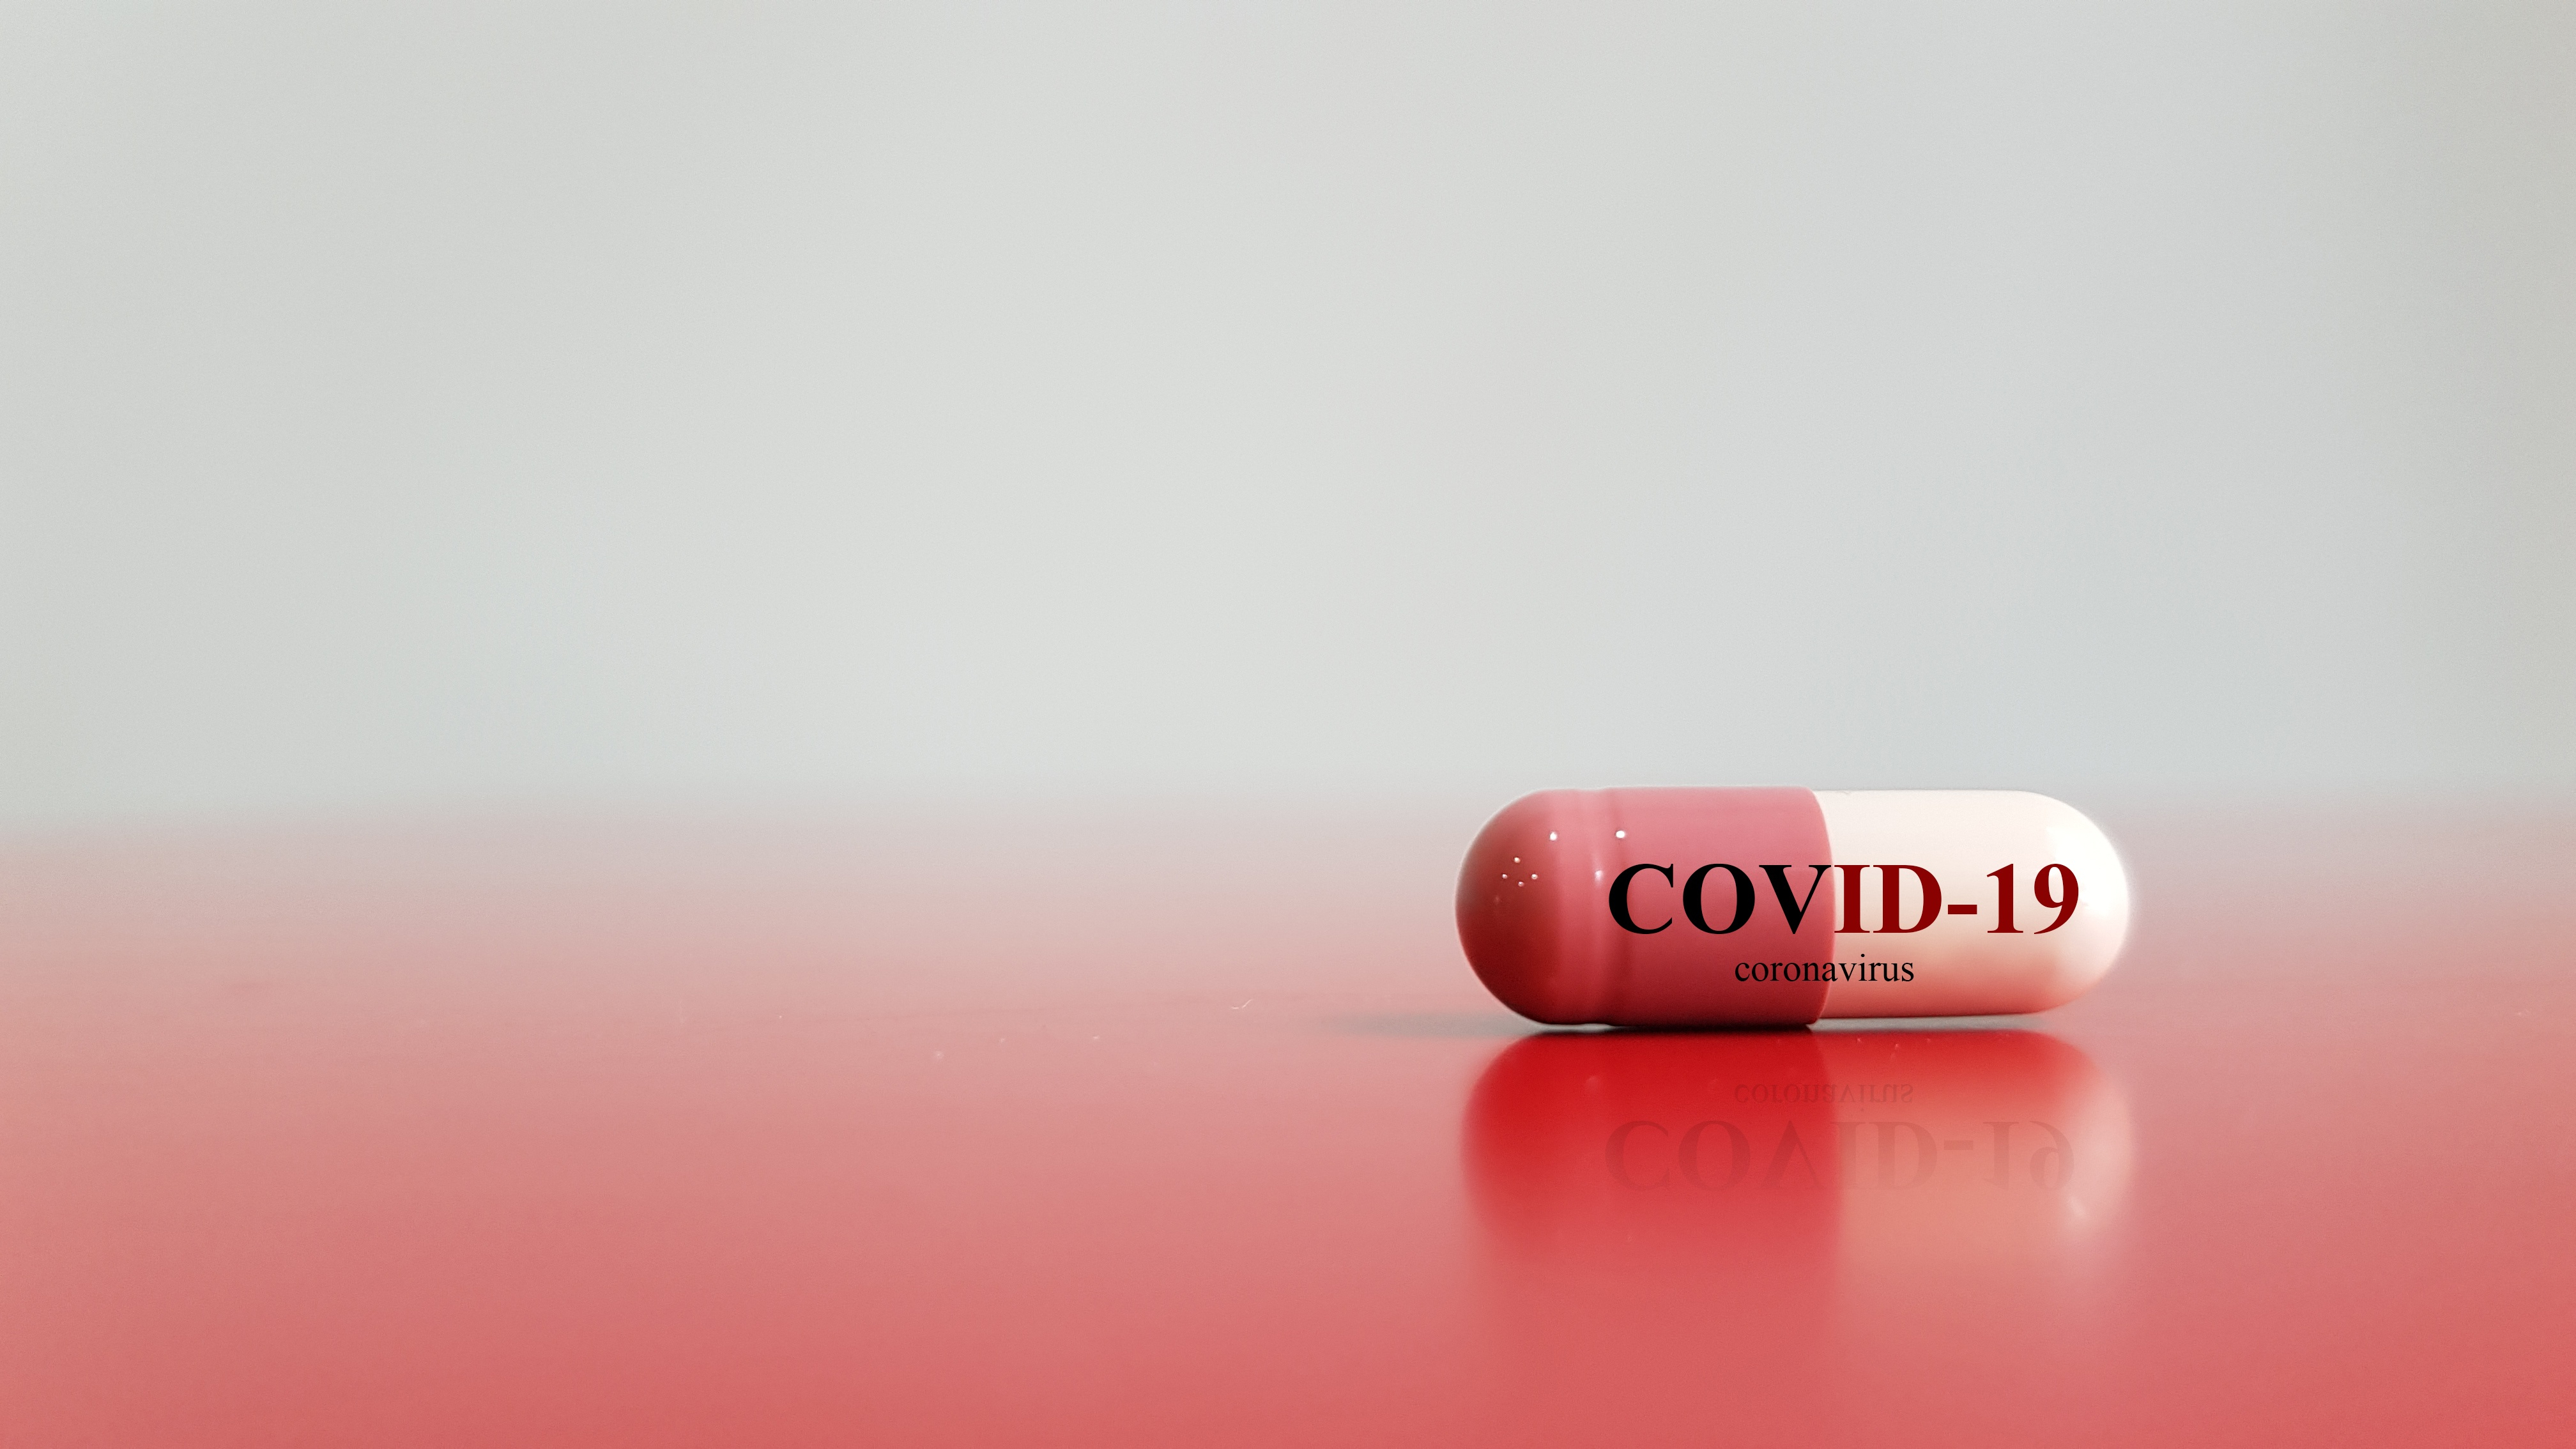 Tratamentele Ronapreve şi Regkirona împotriva Covid-19, aviz pozitiv de la Agenţia Europeană pentru Medicamente